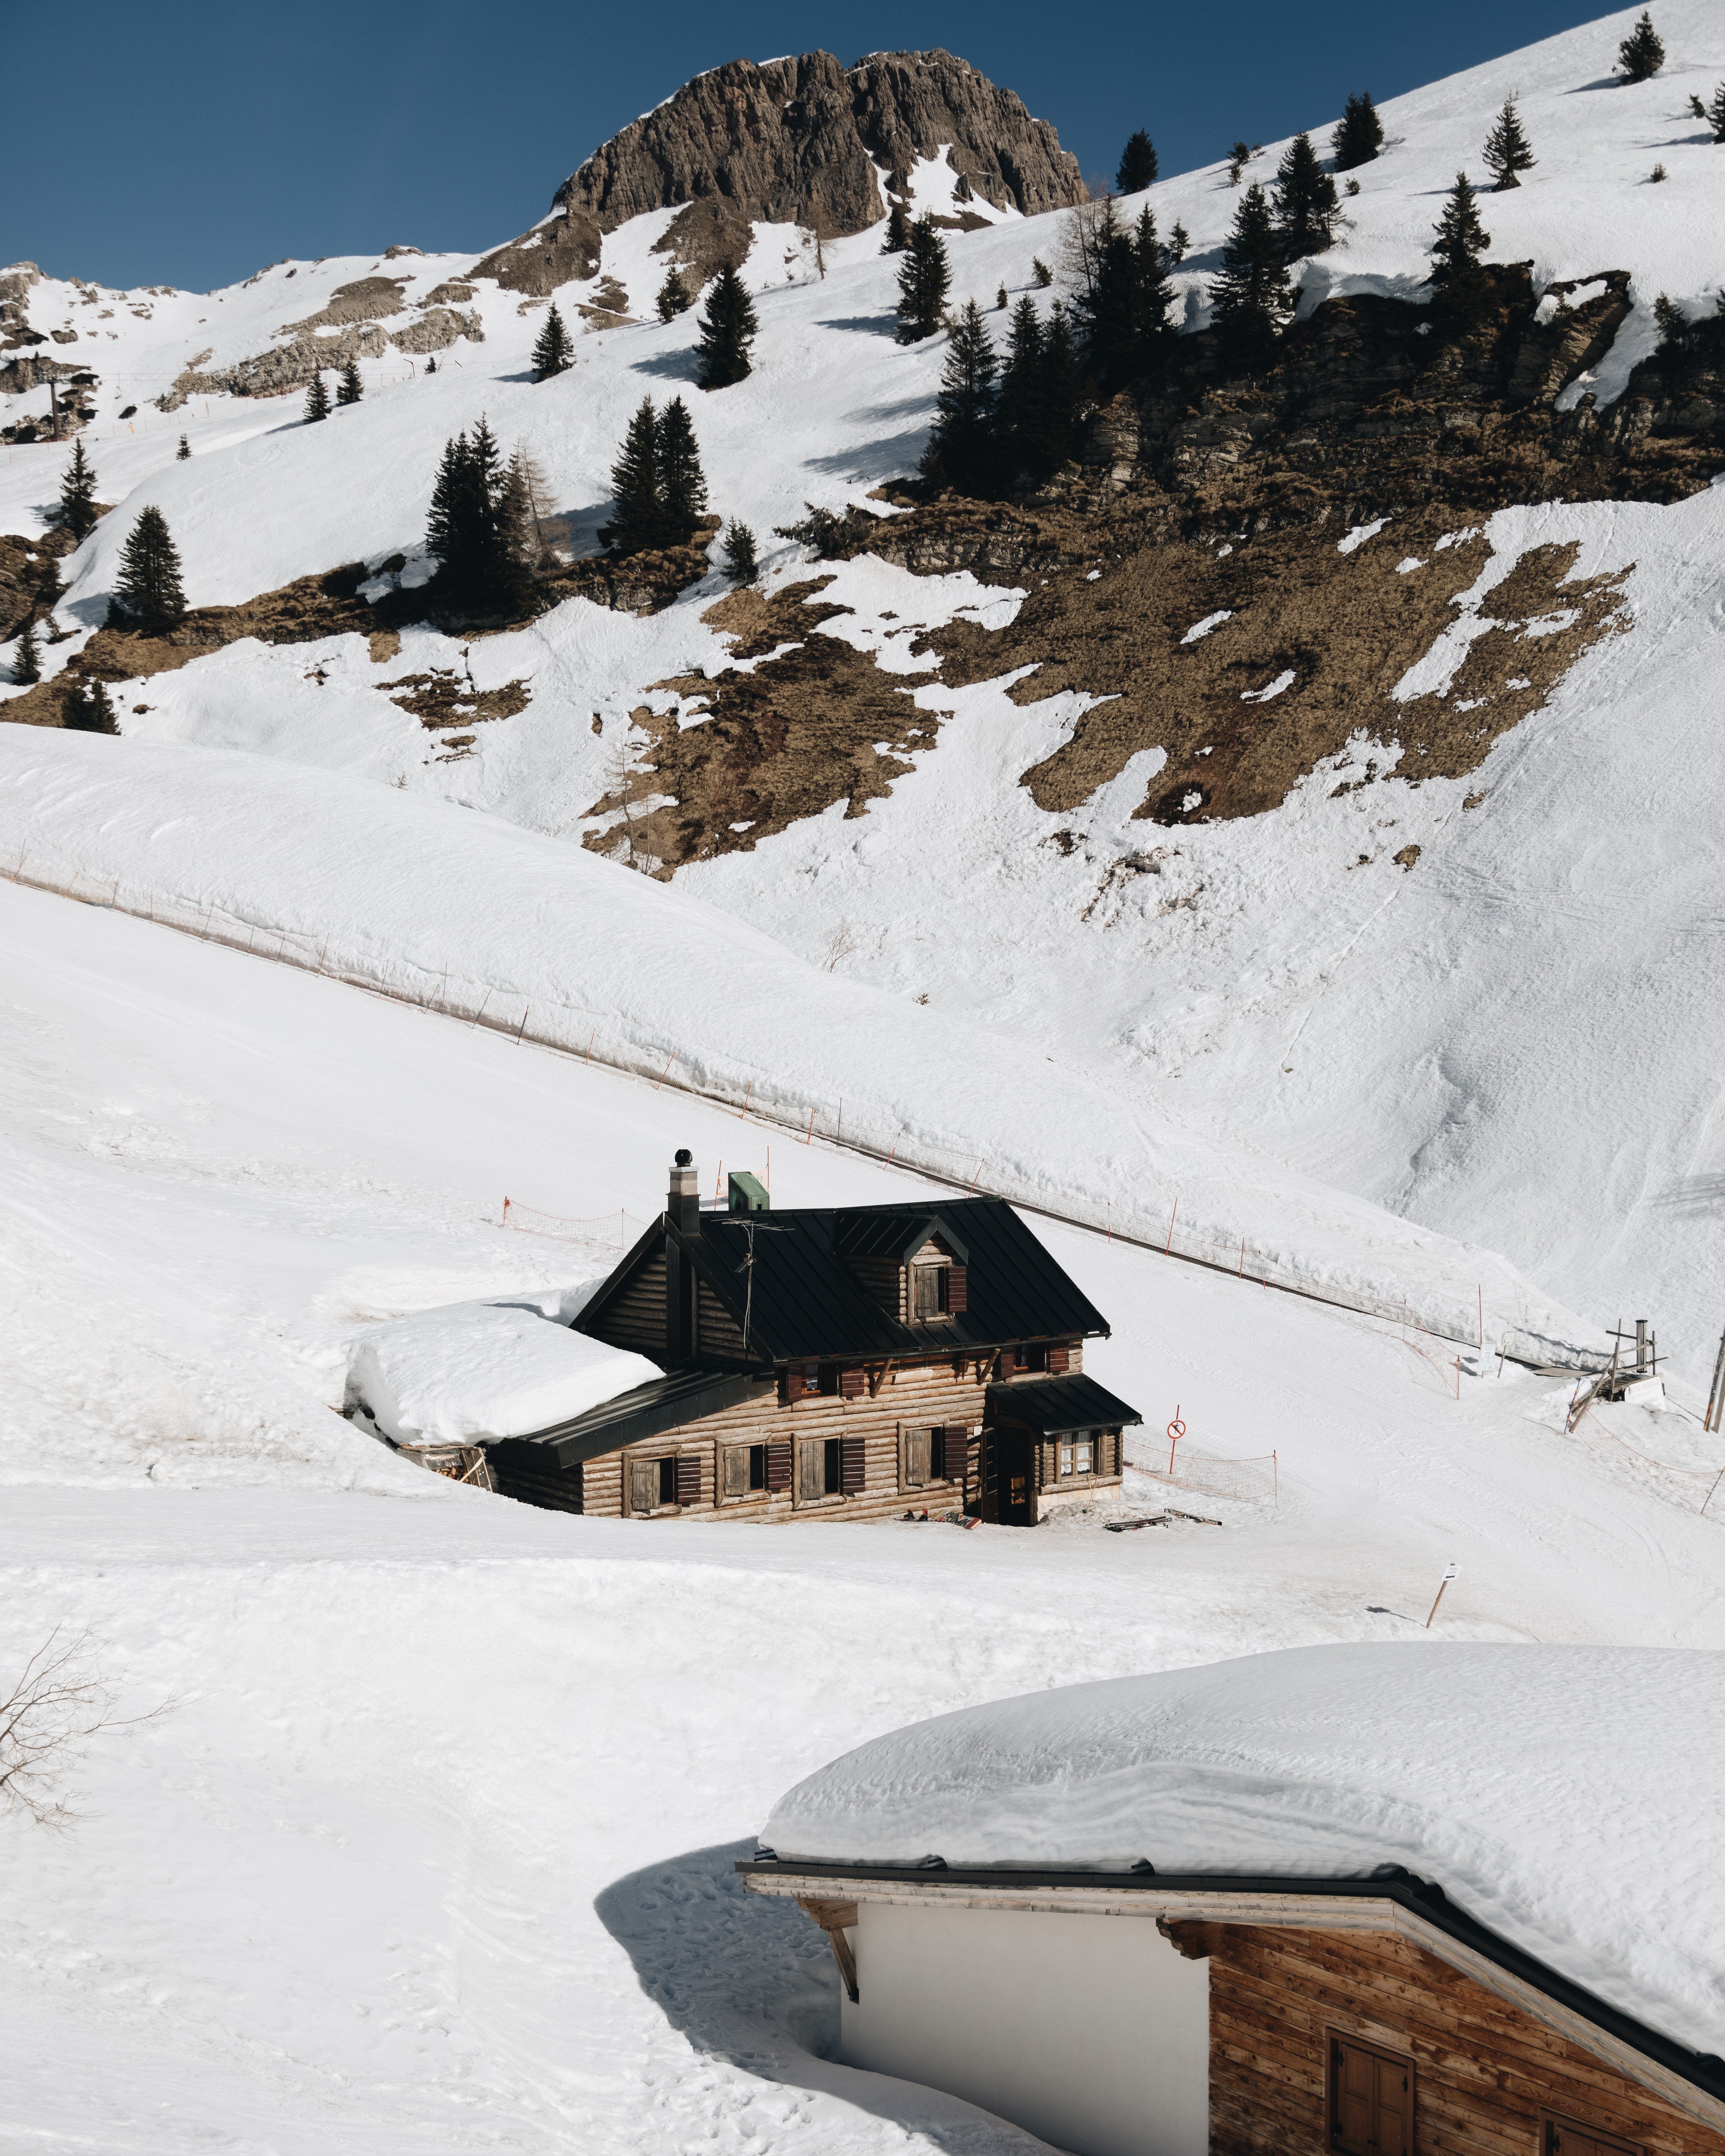 Foto de casa no sopé da montanha nevada 